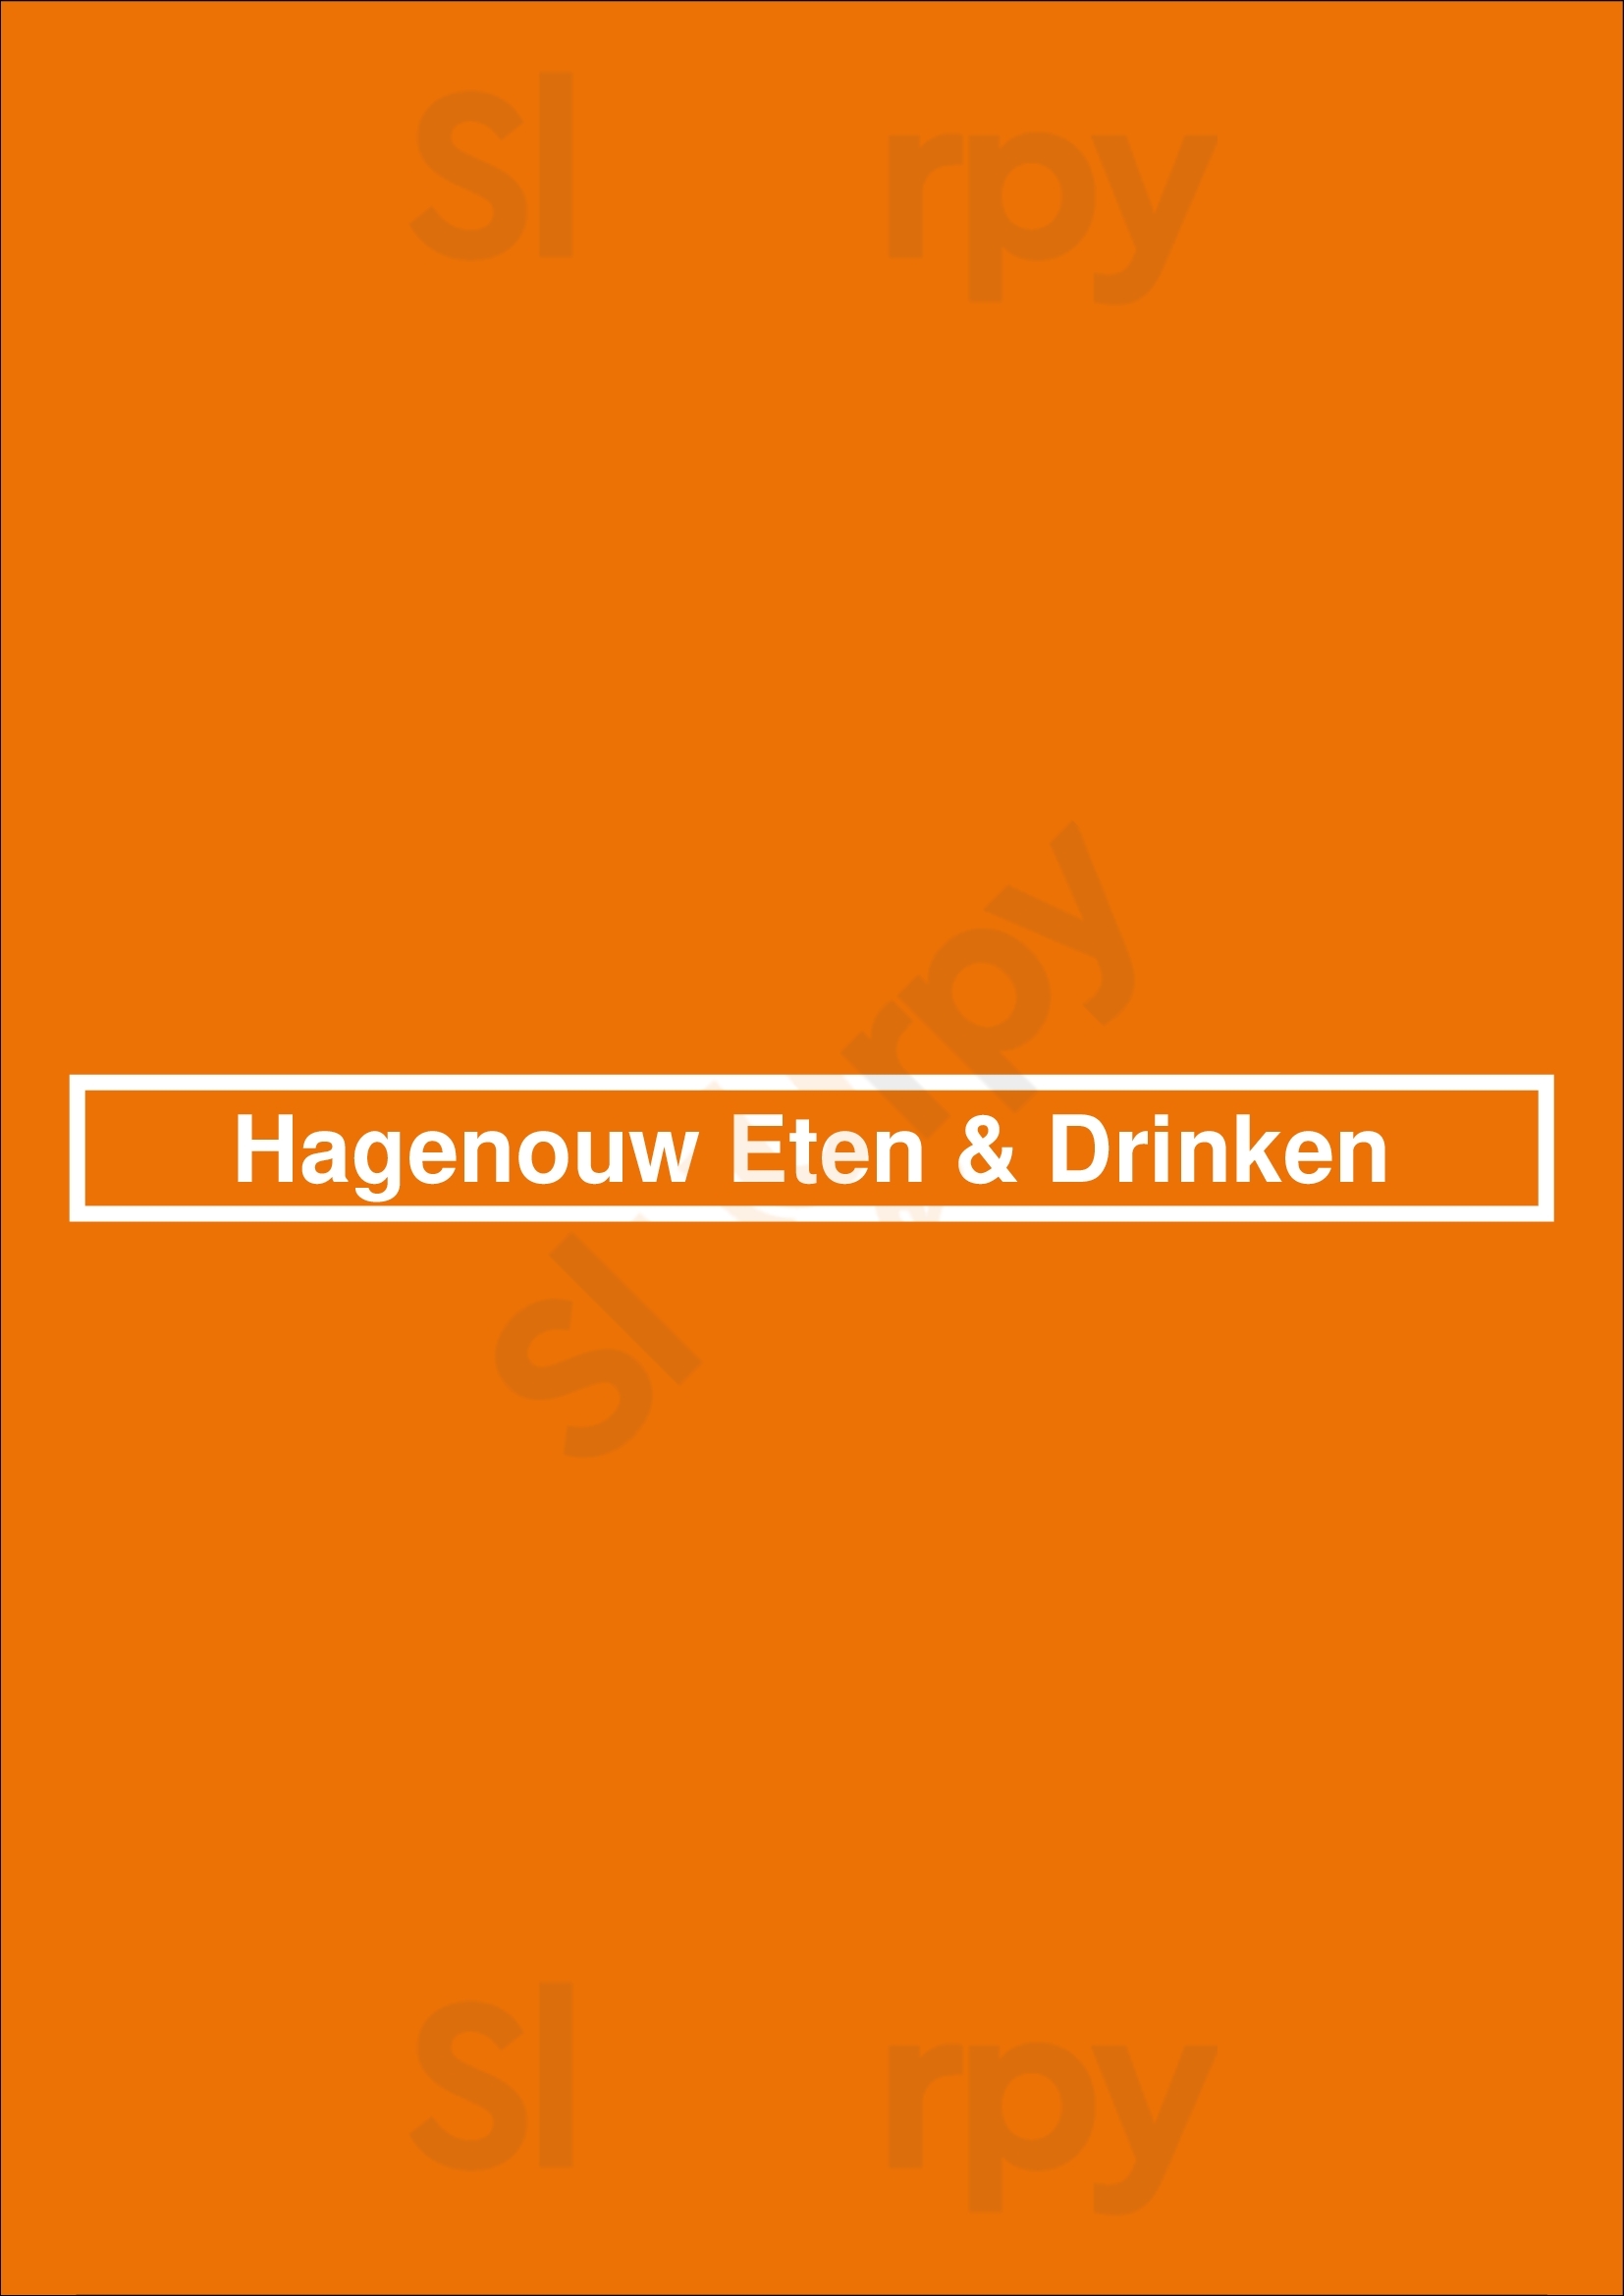 Hagenouw Eten & Drinken Utrecht Menu - 1